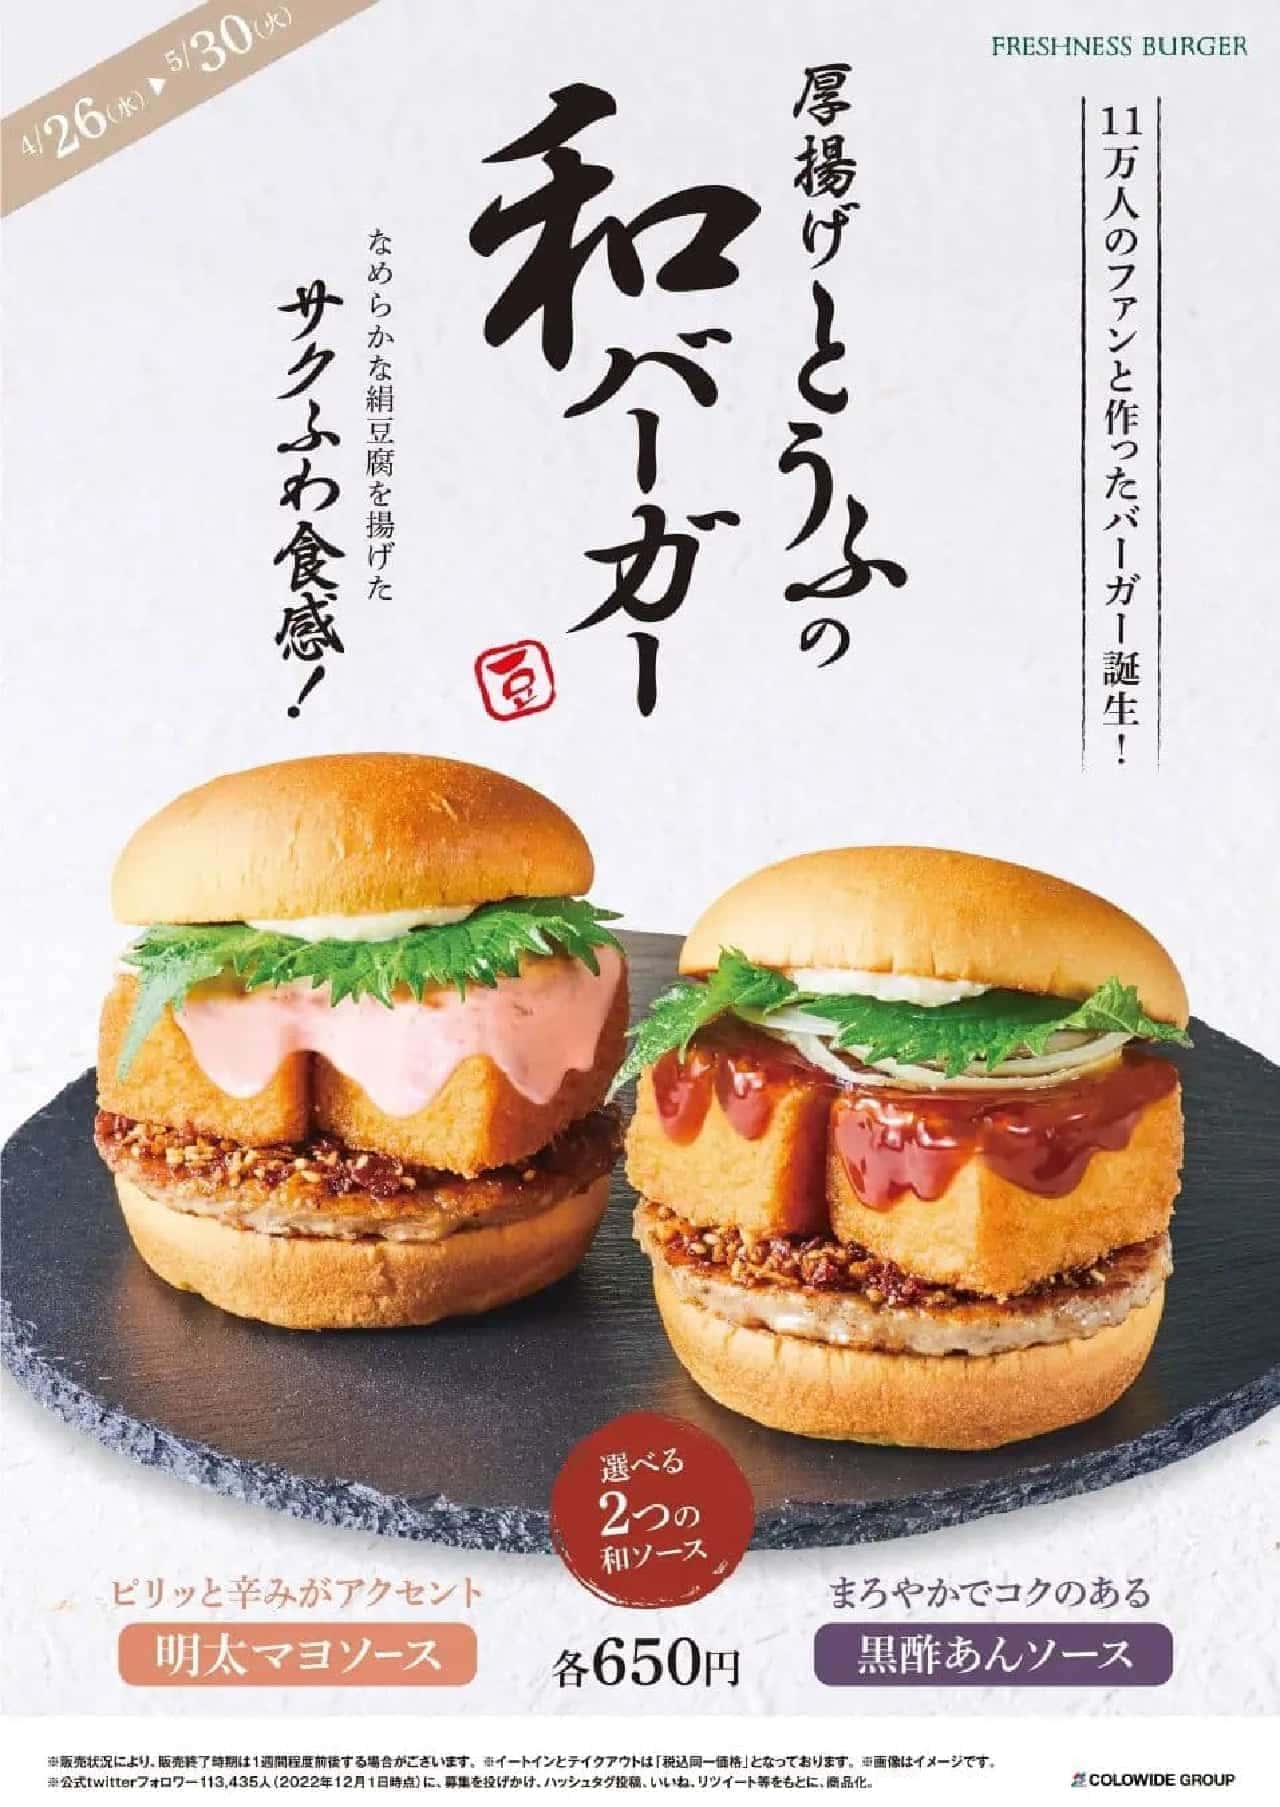 Freshness Burger "Thick Fried Tofu Japanese Burger with Kurozu An Sauce" and "Thick Fried Tofu Japanese Burger with Mentaiko Mayo Sauce